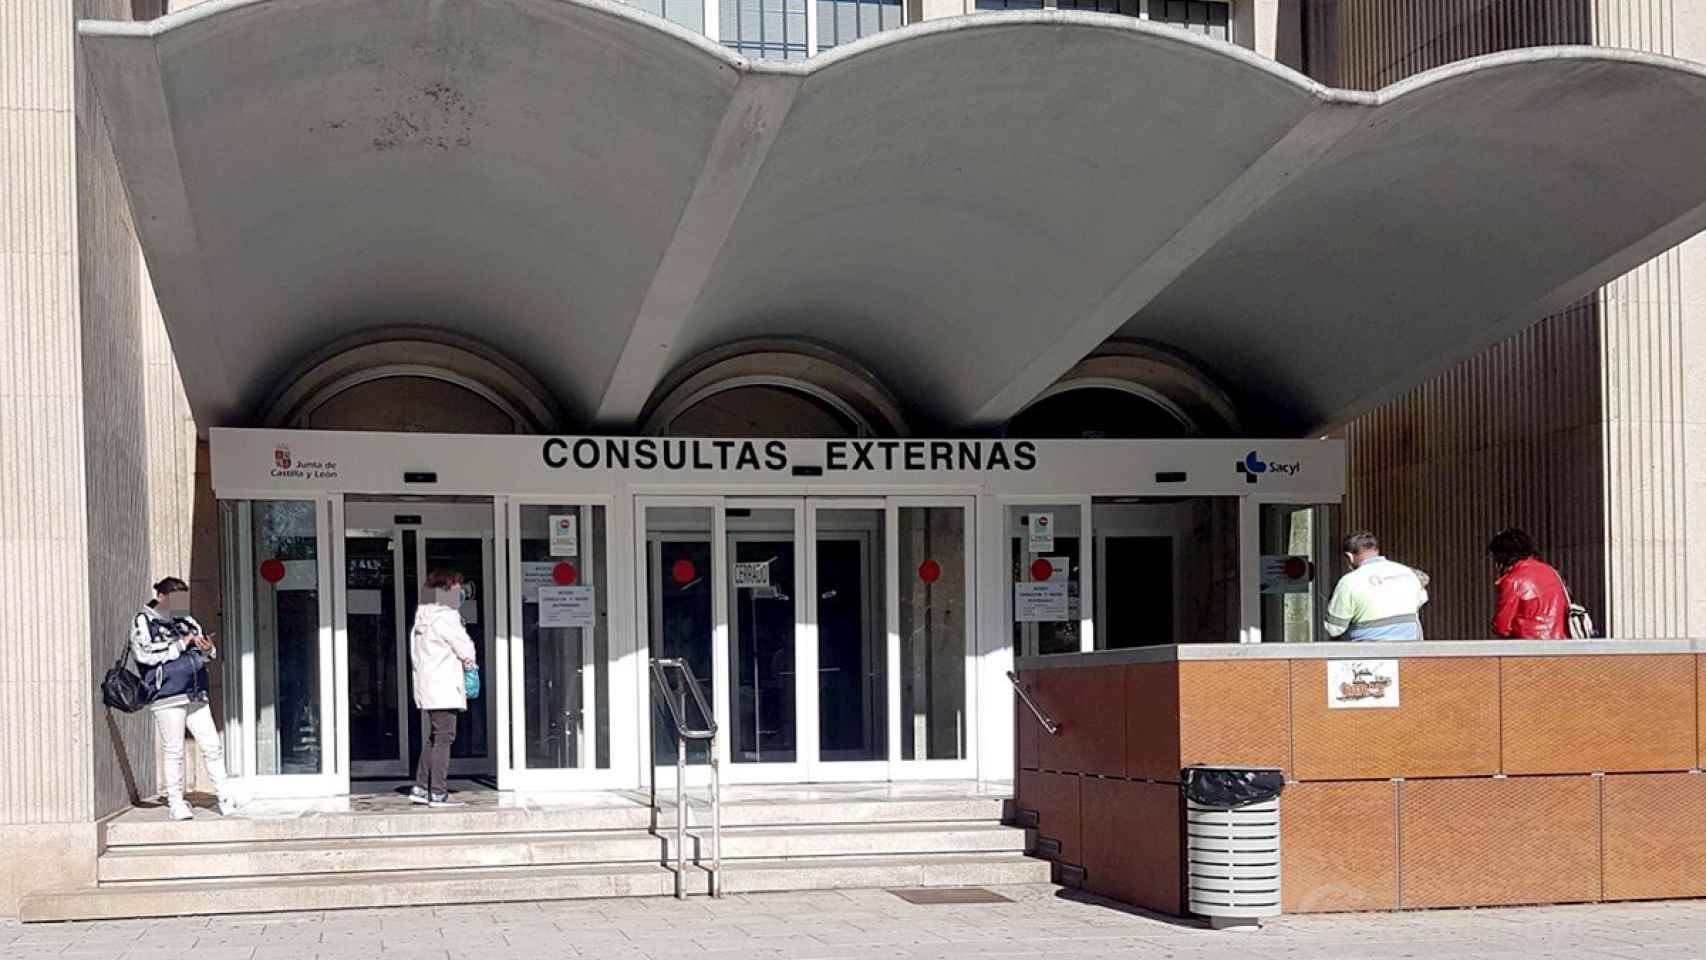 Entrada de consultas externas en el Hospital Virgen de la Concha de Zamora